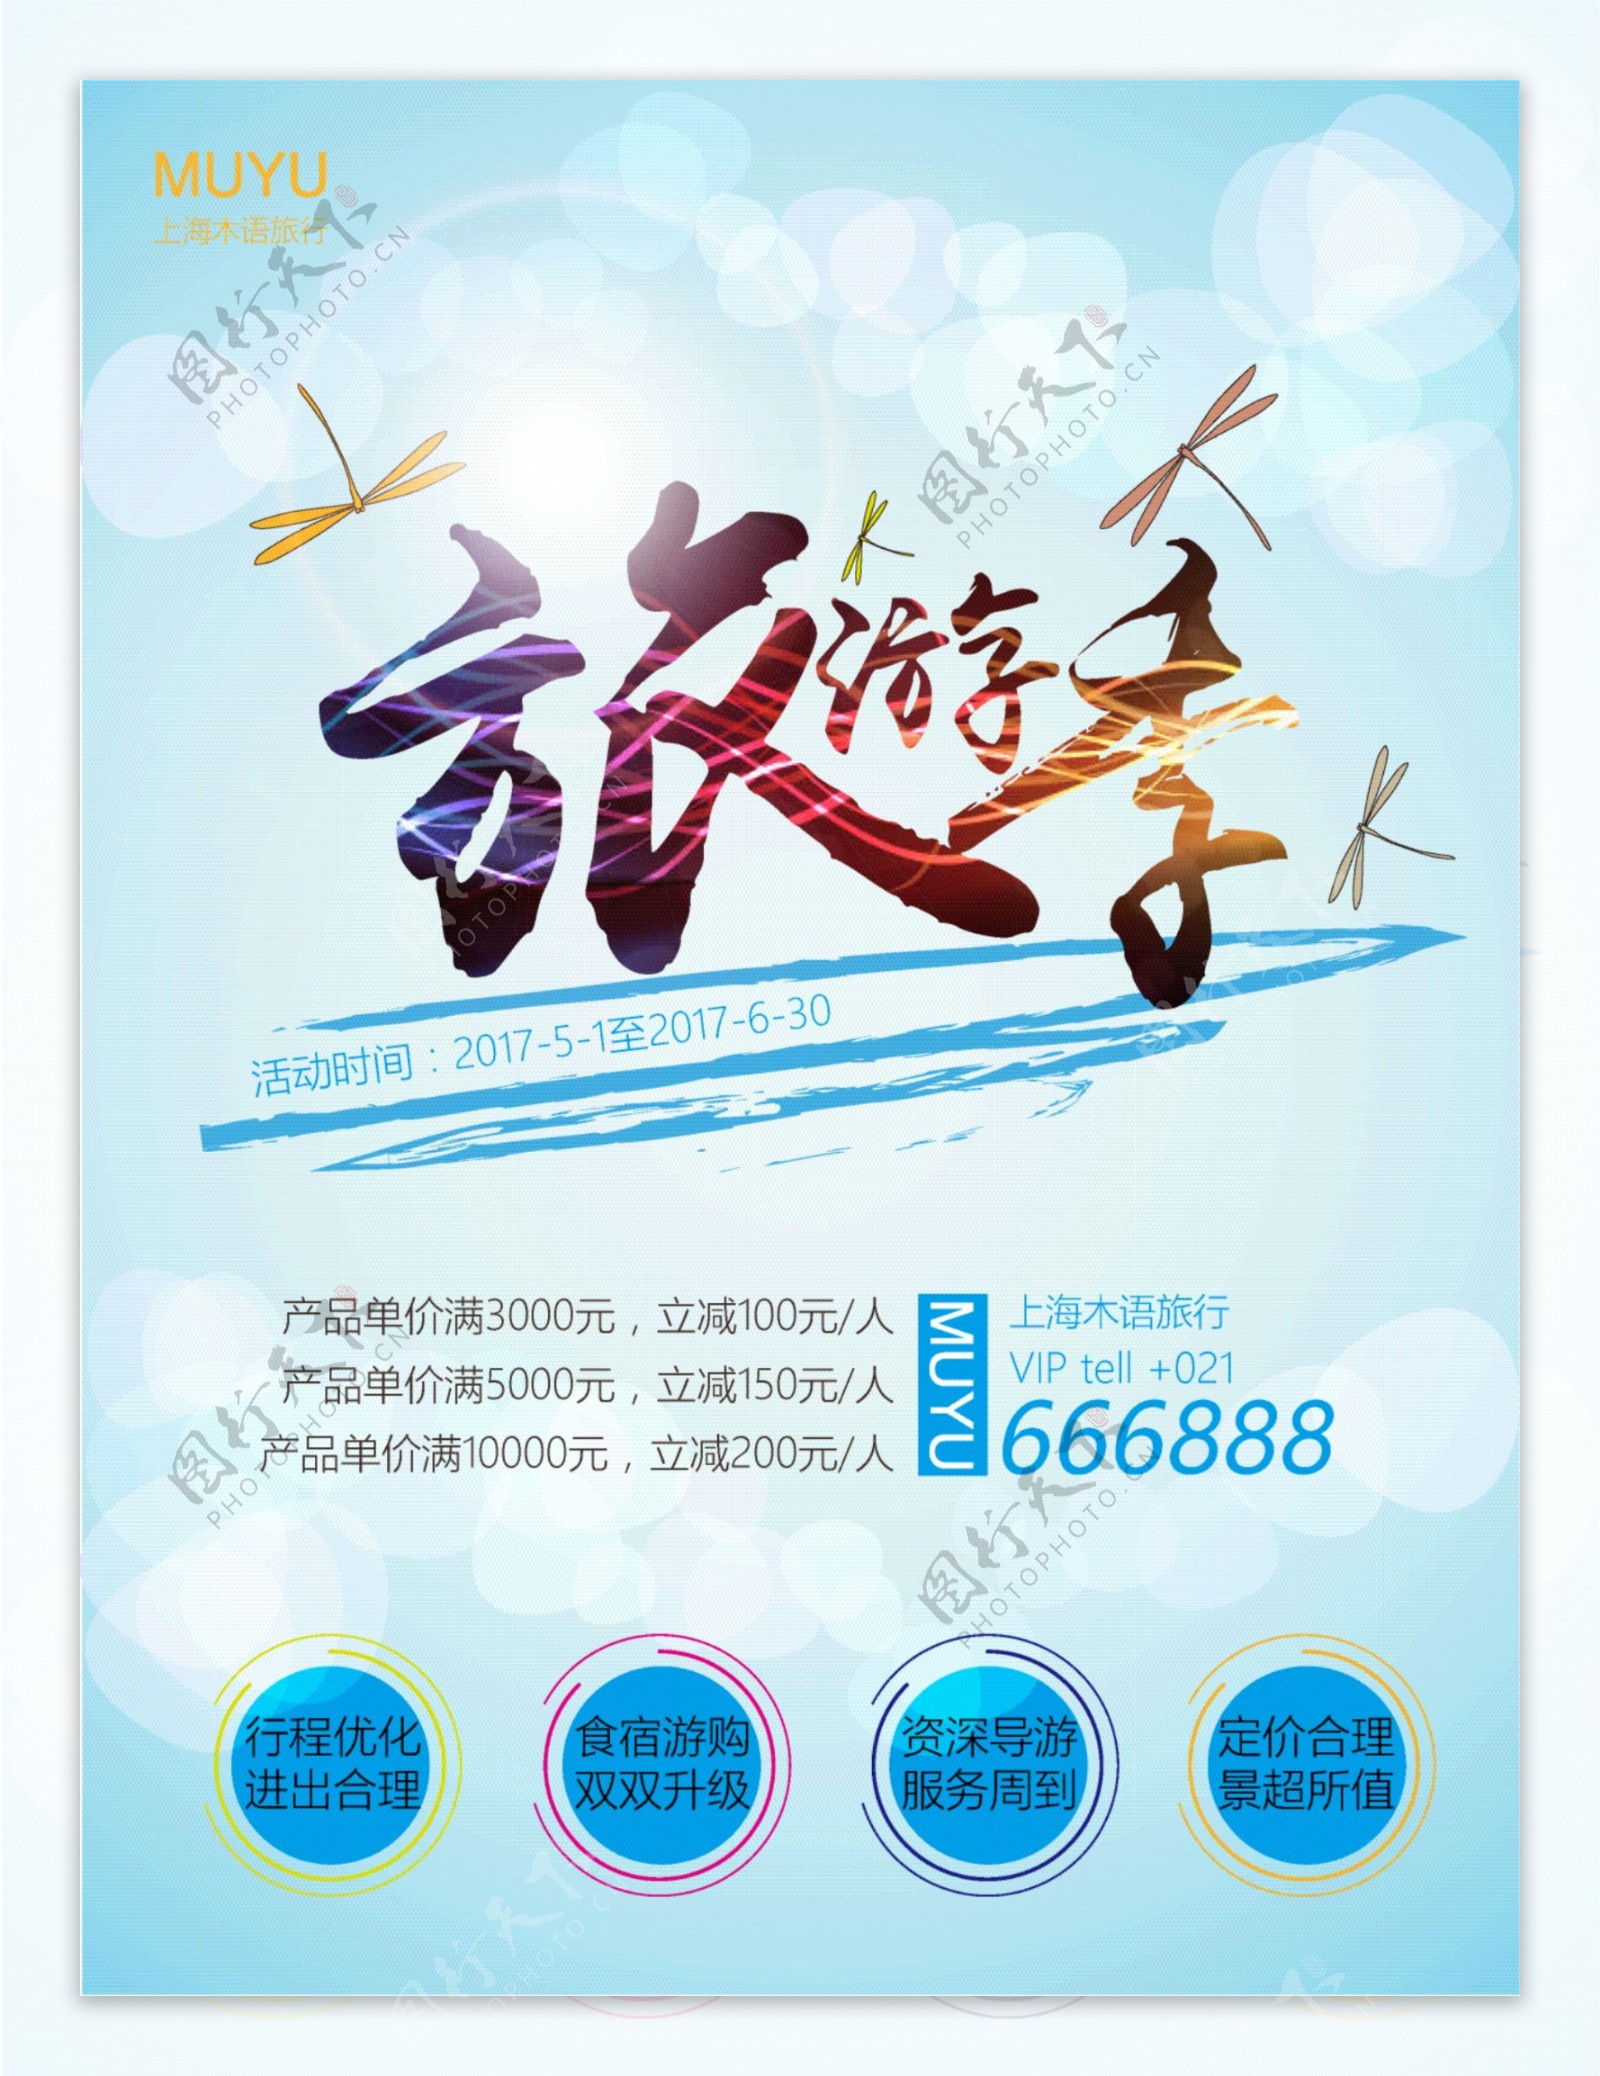 夏季清爽旅游旅行社推广宣传海报模板